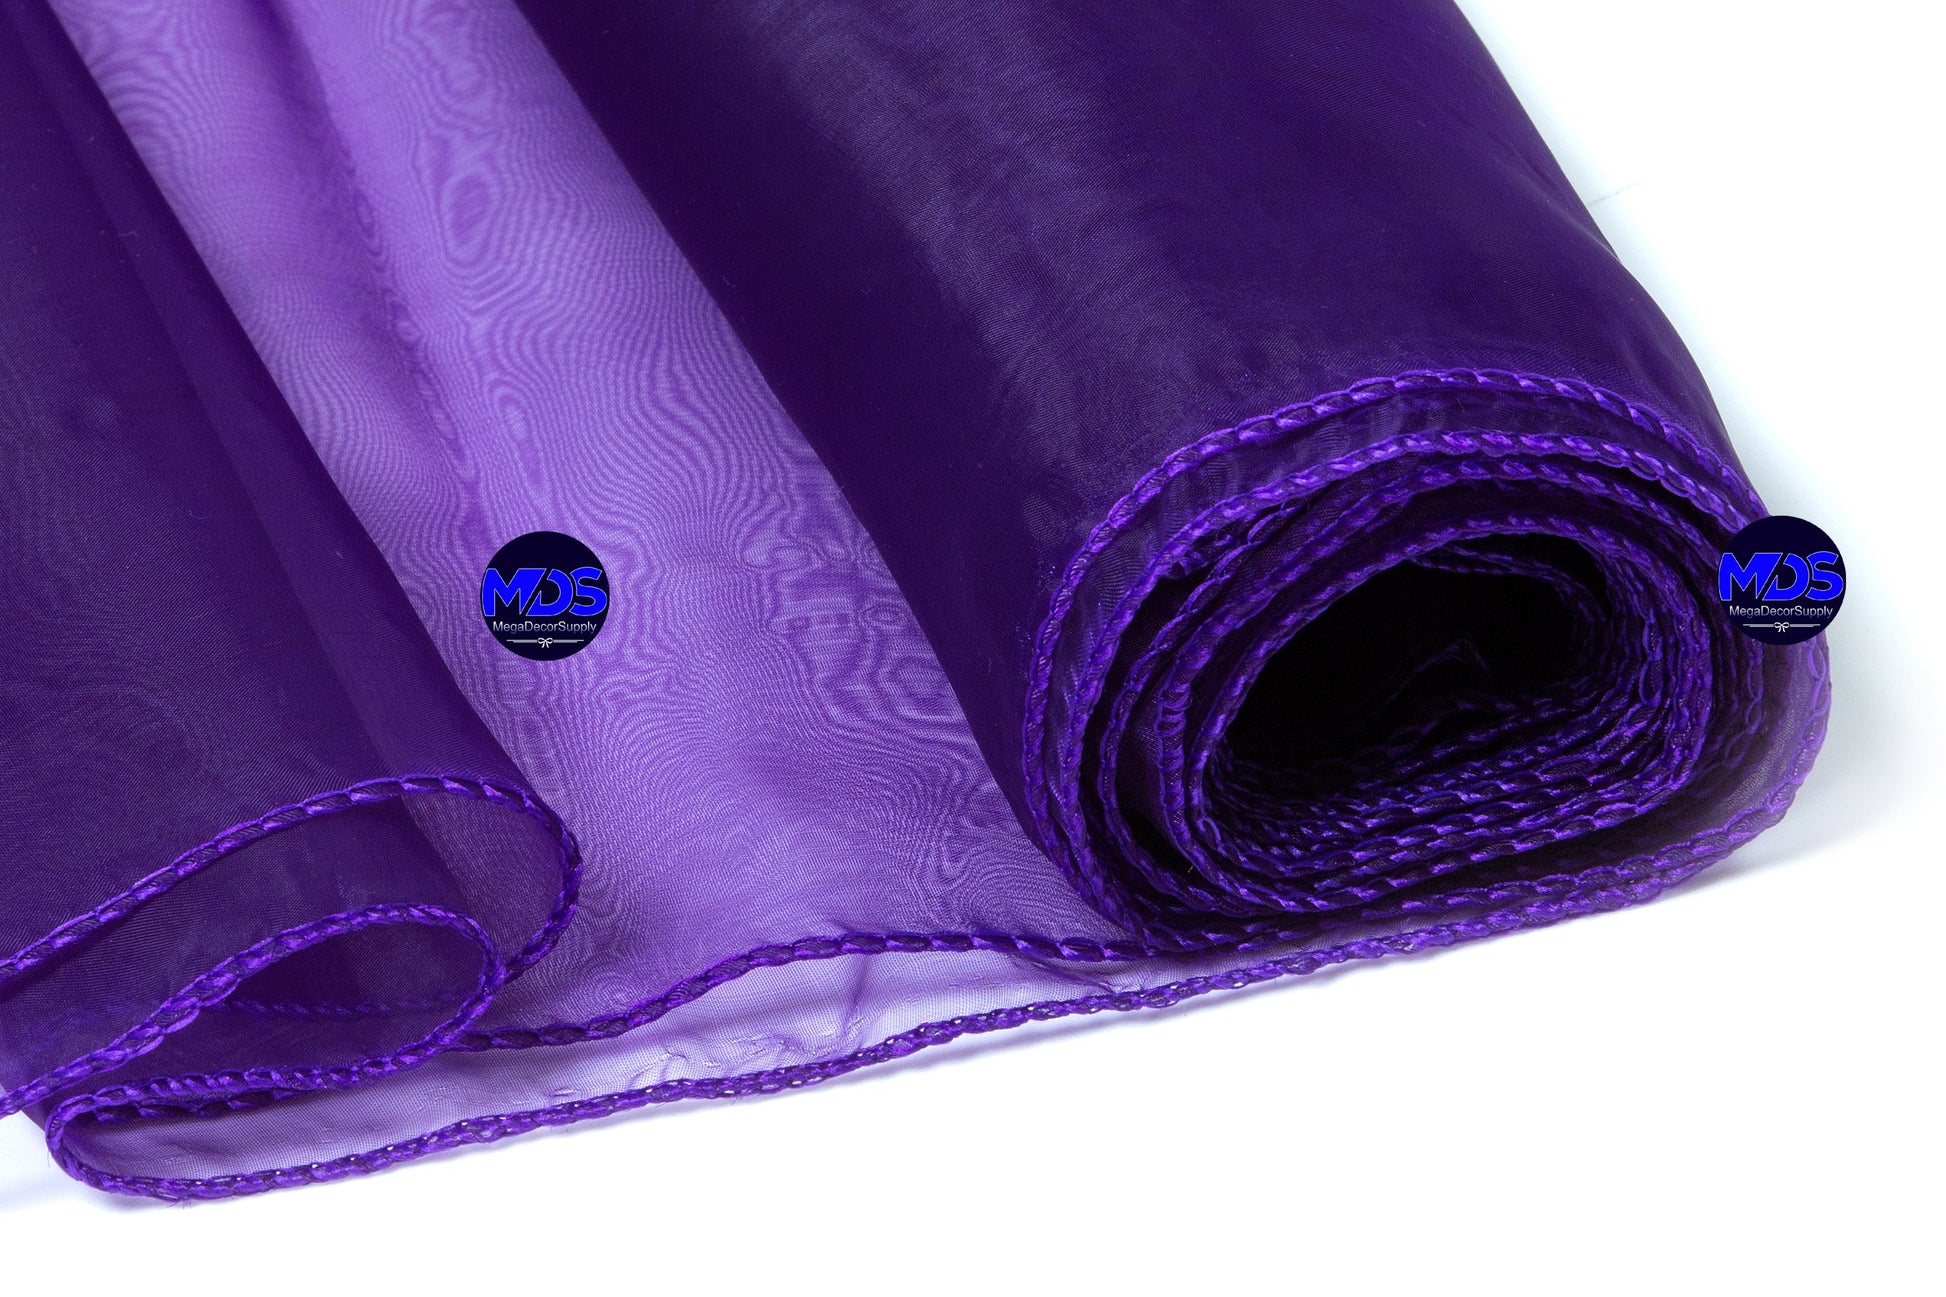 Cadbury Purple,b38ca8fc-b5fb-44b8-b9f8-b7f1b8151378